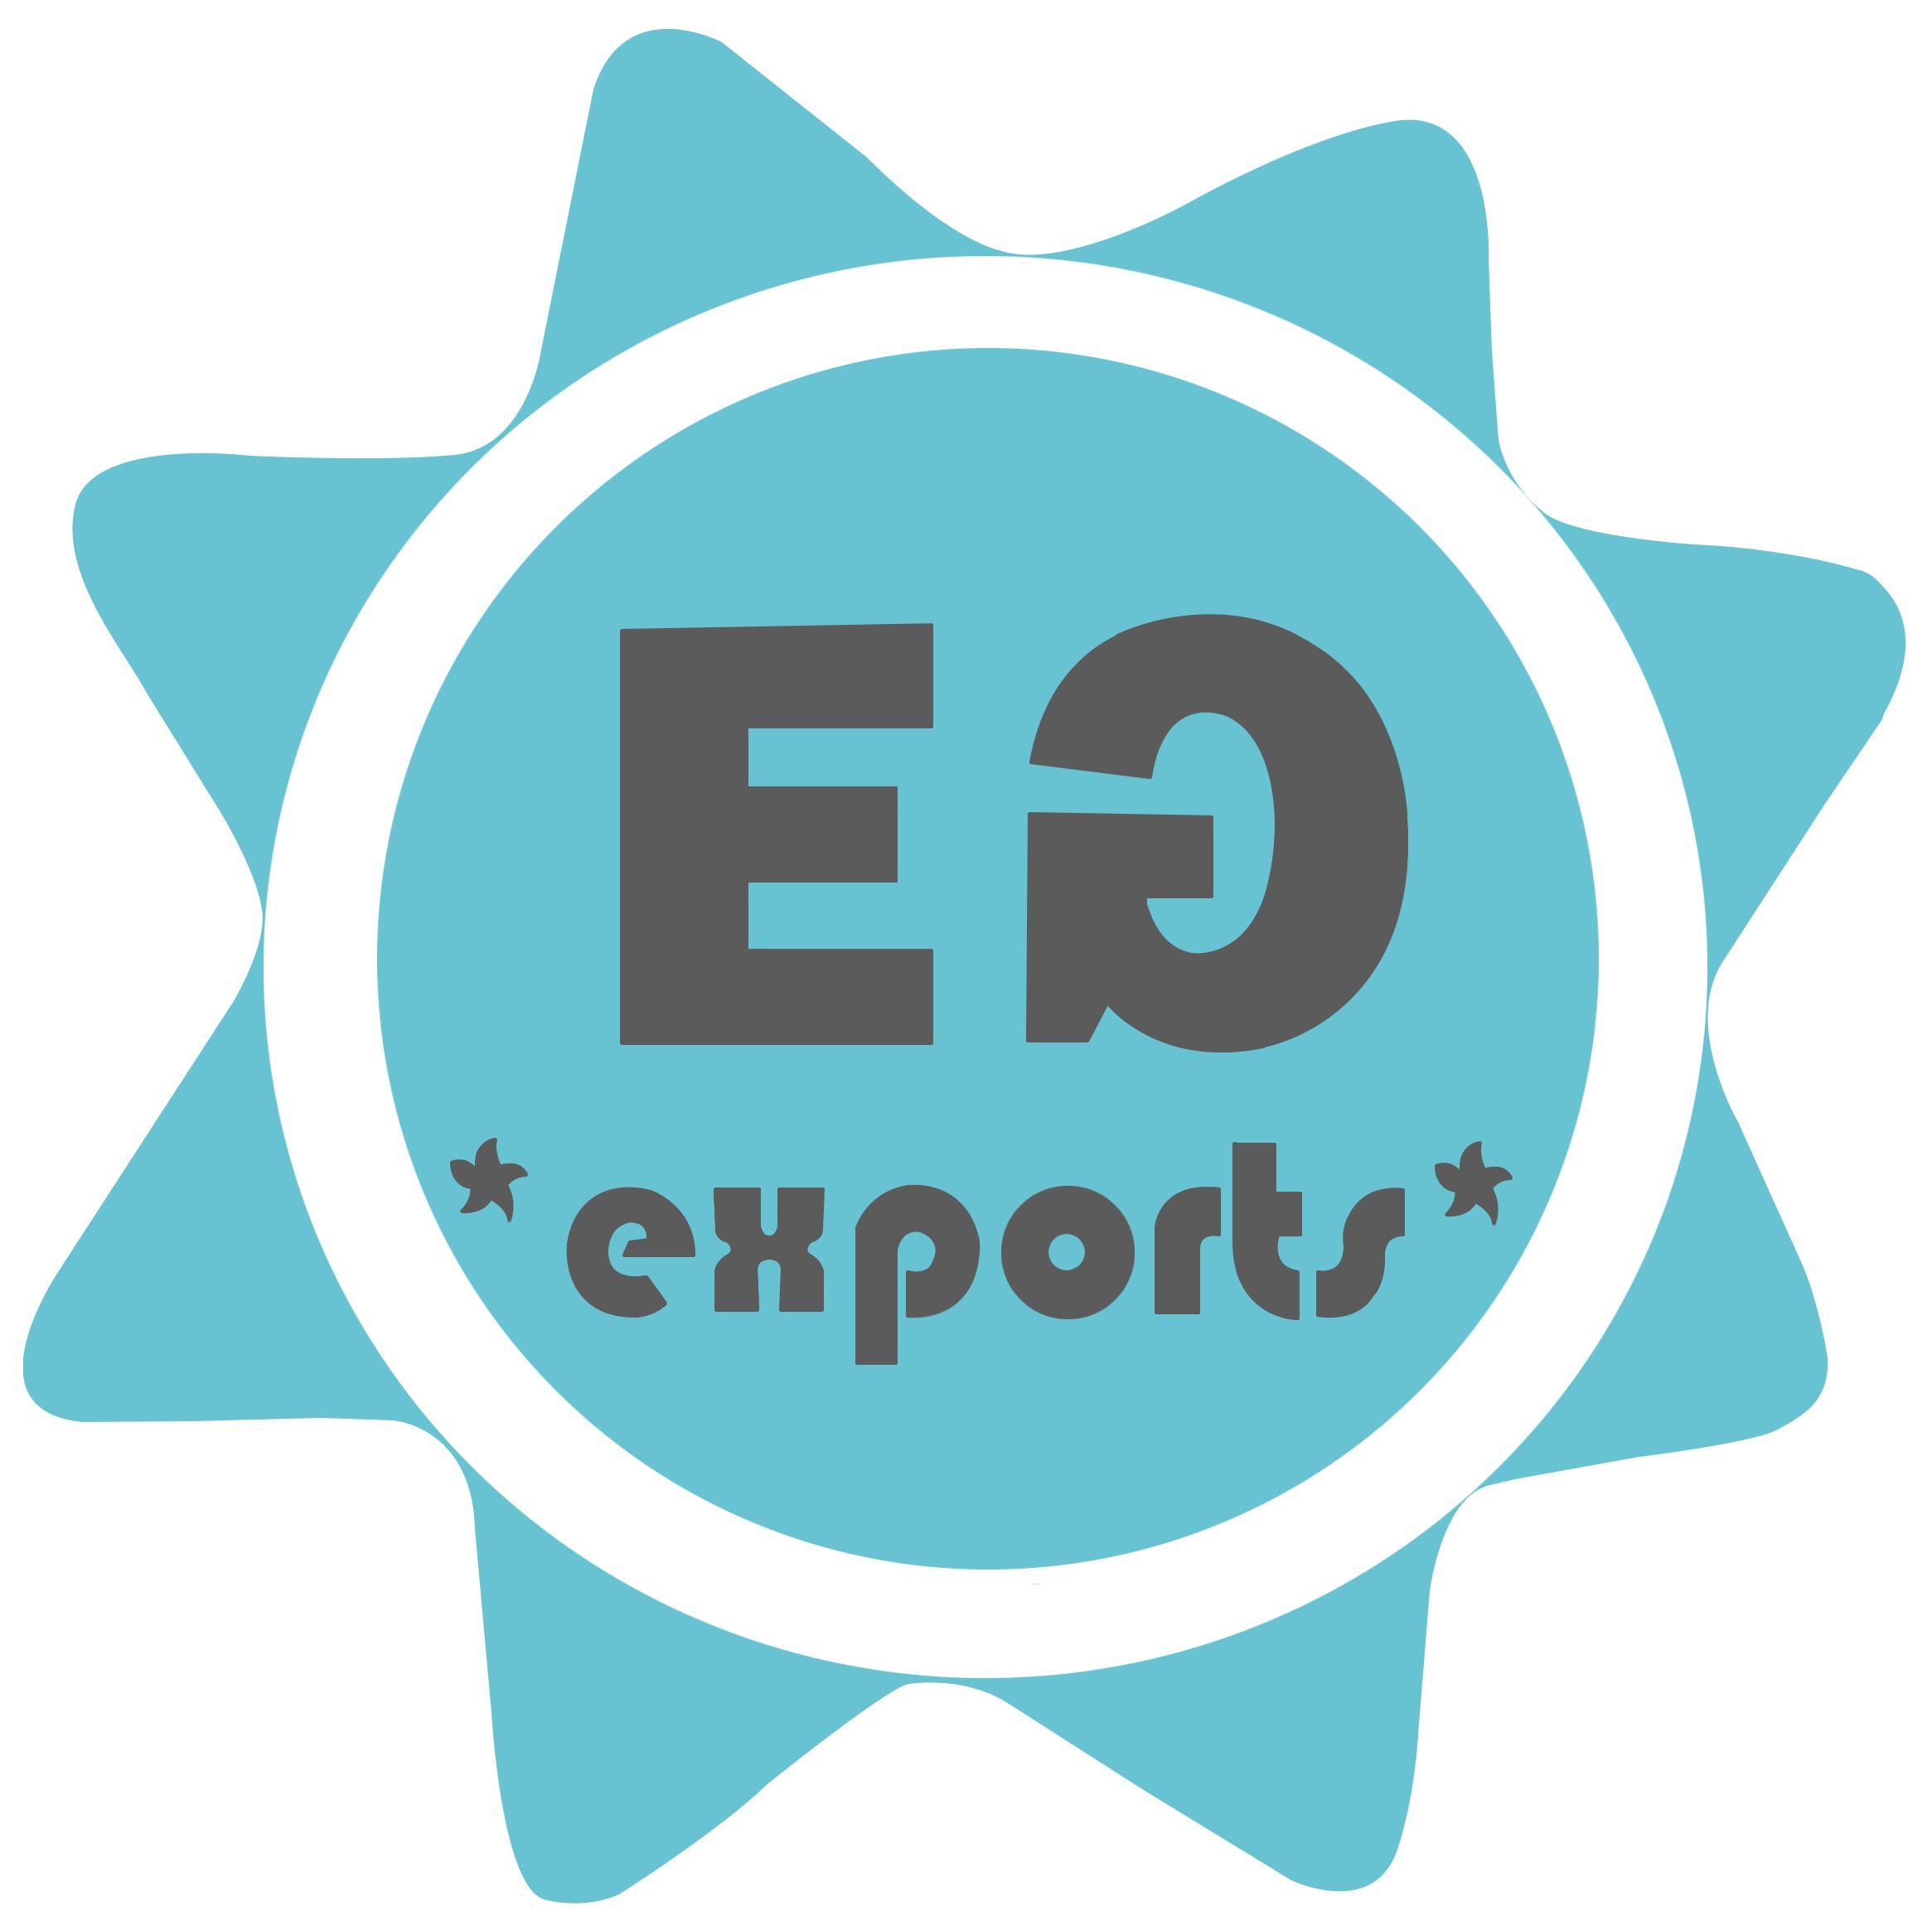 Eden Garden Exports bereikt nieuwe hoogten met Odoo